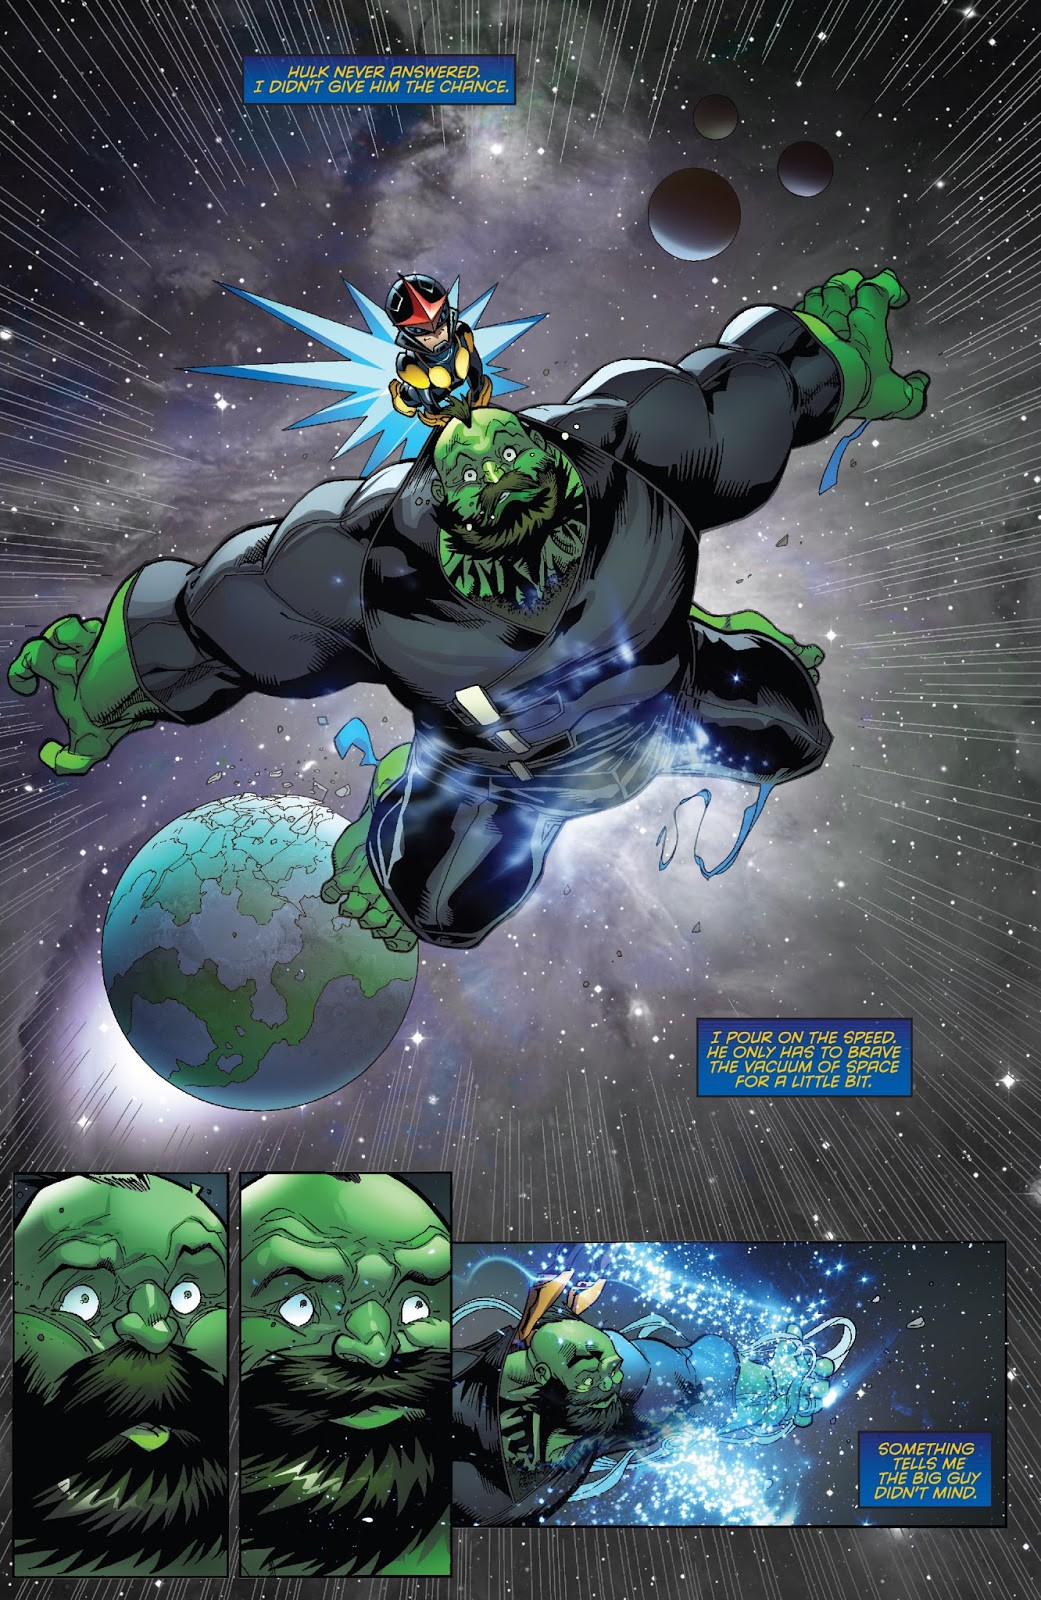 Chiến giáp siêu khủng Hulk hứa hẹn sẽ mang lại cho bạn cảm giác vô cùng hào hứng và dồi dào sức mạnh. Với đầy đủ phiên bản cực kỳ ấn tượng, bạn sẽ được khám phá nhiều chiến giáp khác nhau cùng với các kỹ năng hiệp sĩ uy lực.